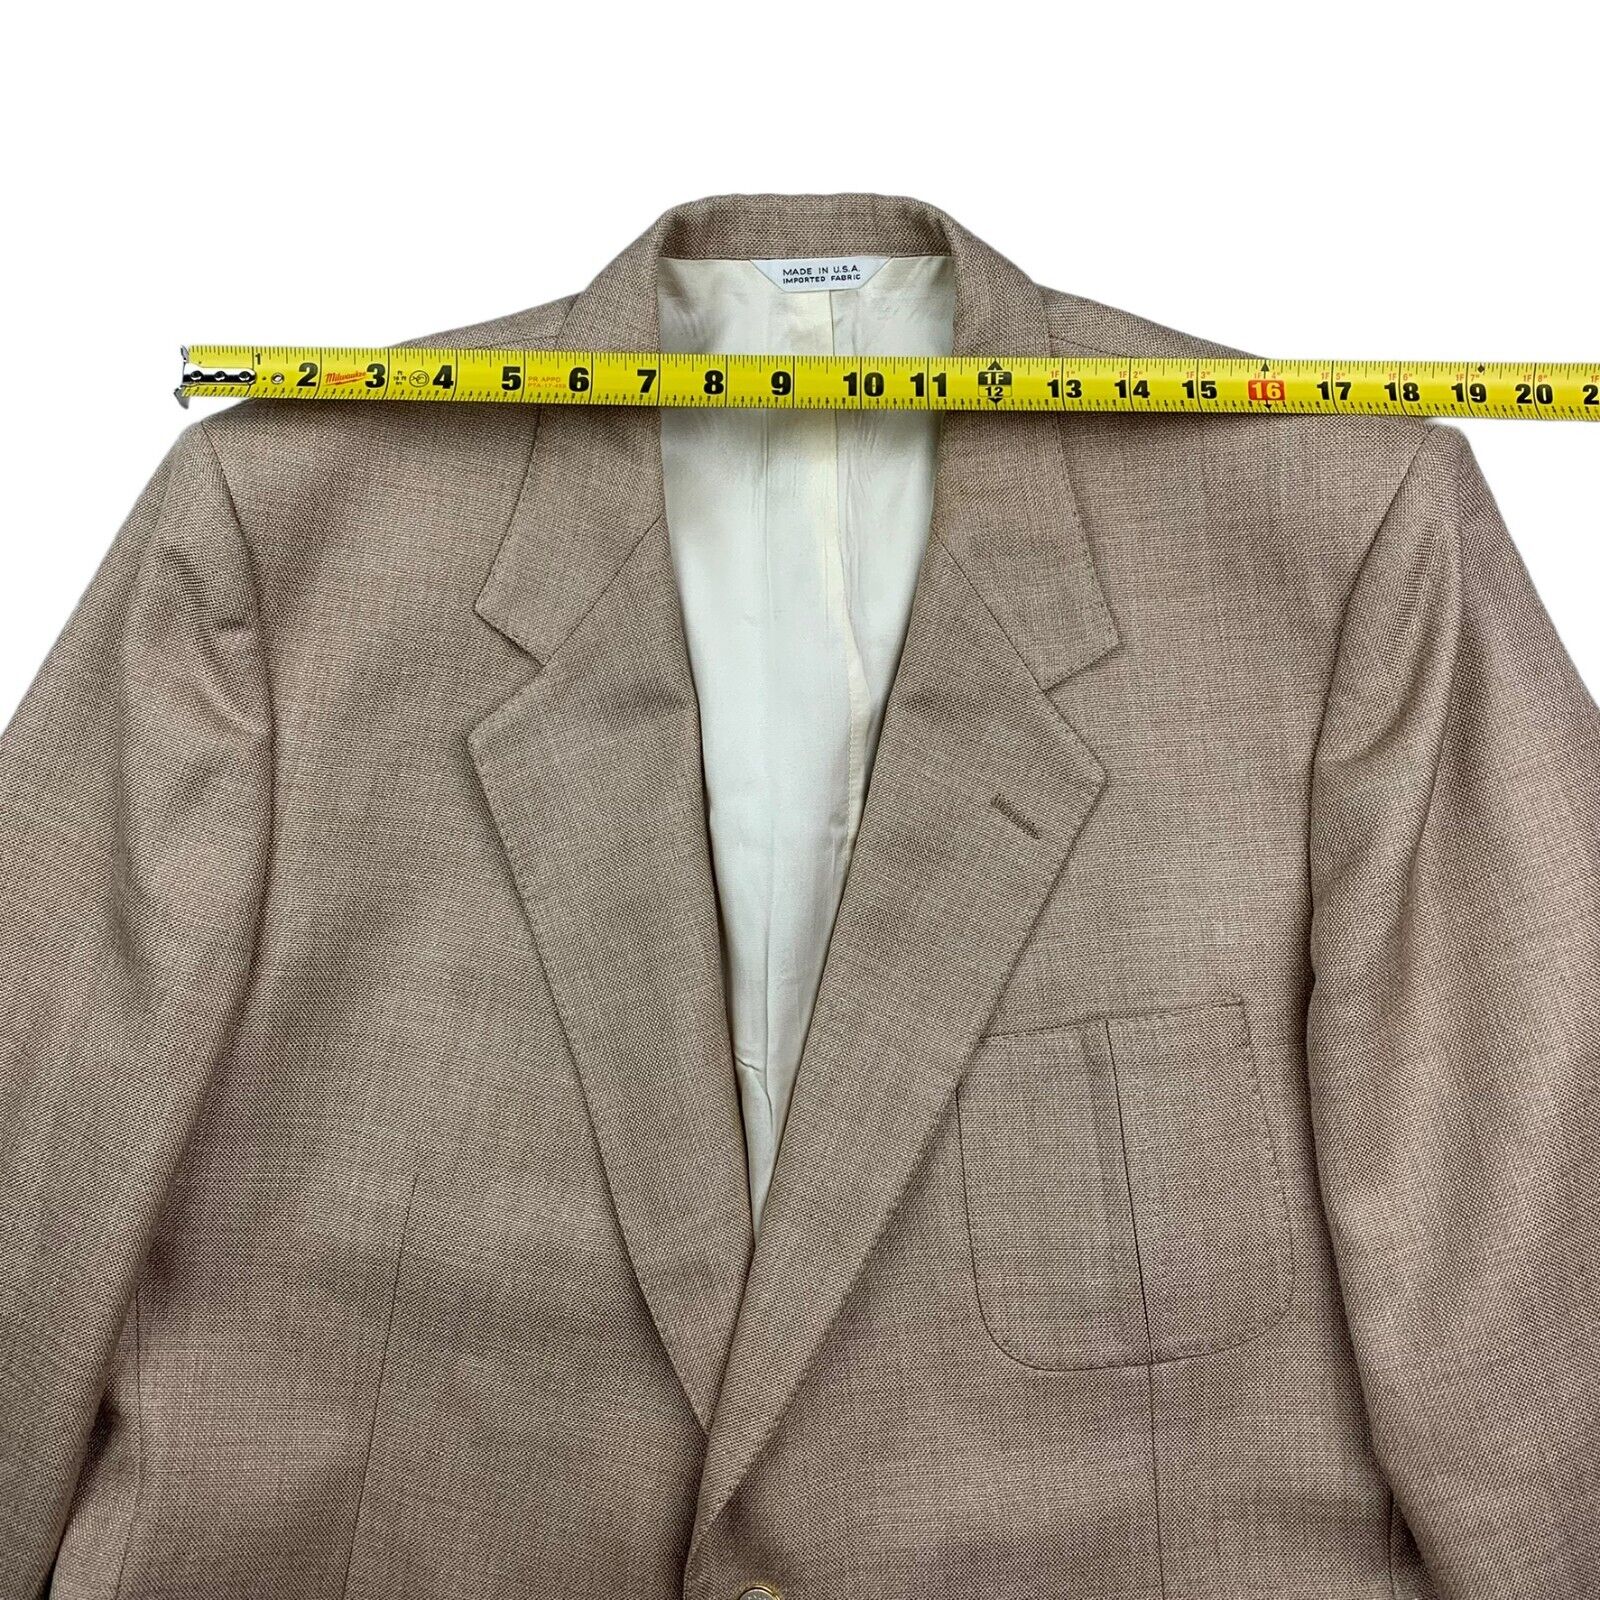 Lanvin Men’s 2-Button Jacket Blazer Gold Buttons Brown/Beige • USA • Size  48R